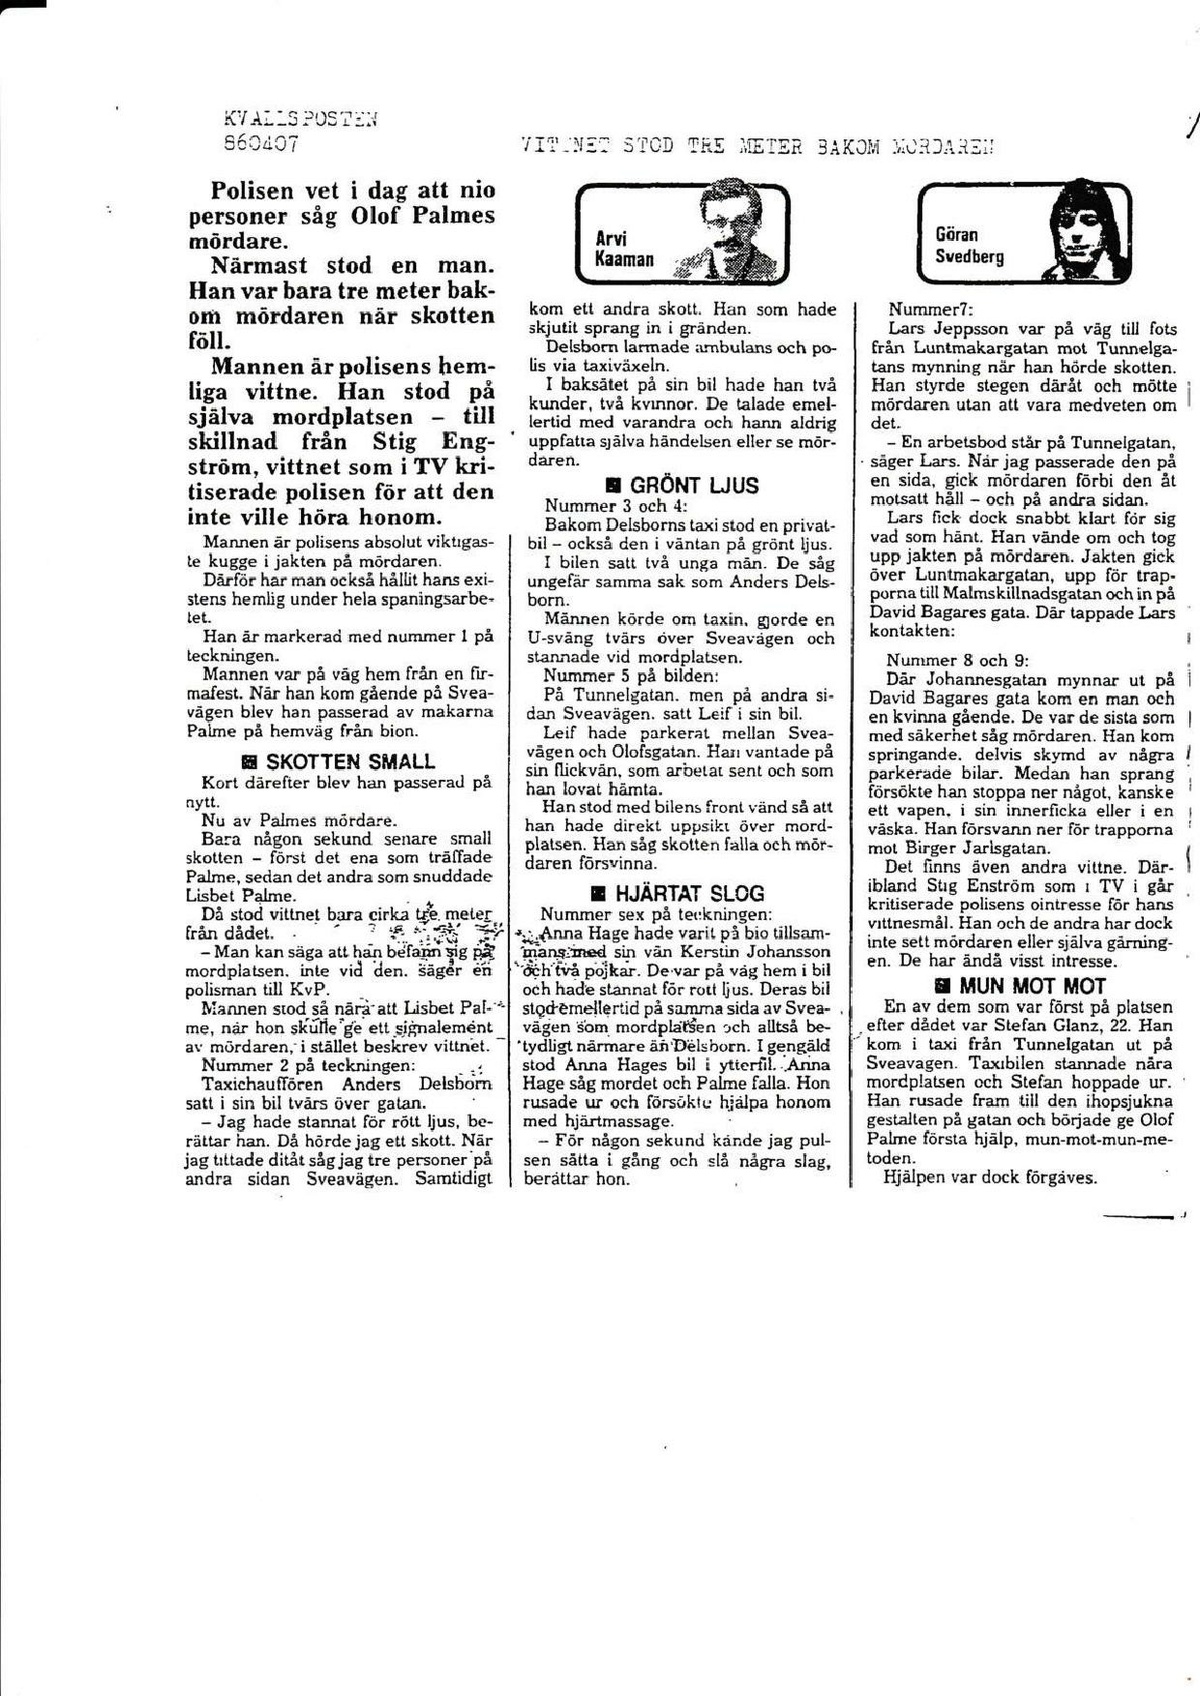 Pol-2019-02-11 E63-29 Tidningsartiklar om Stig Engström Expressen och KP 7 april 1986.pdf